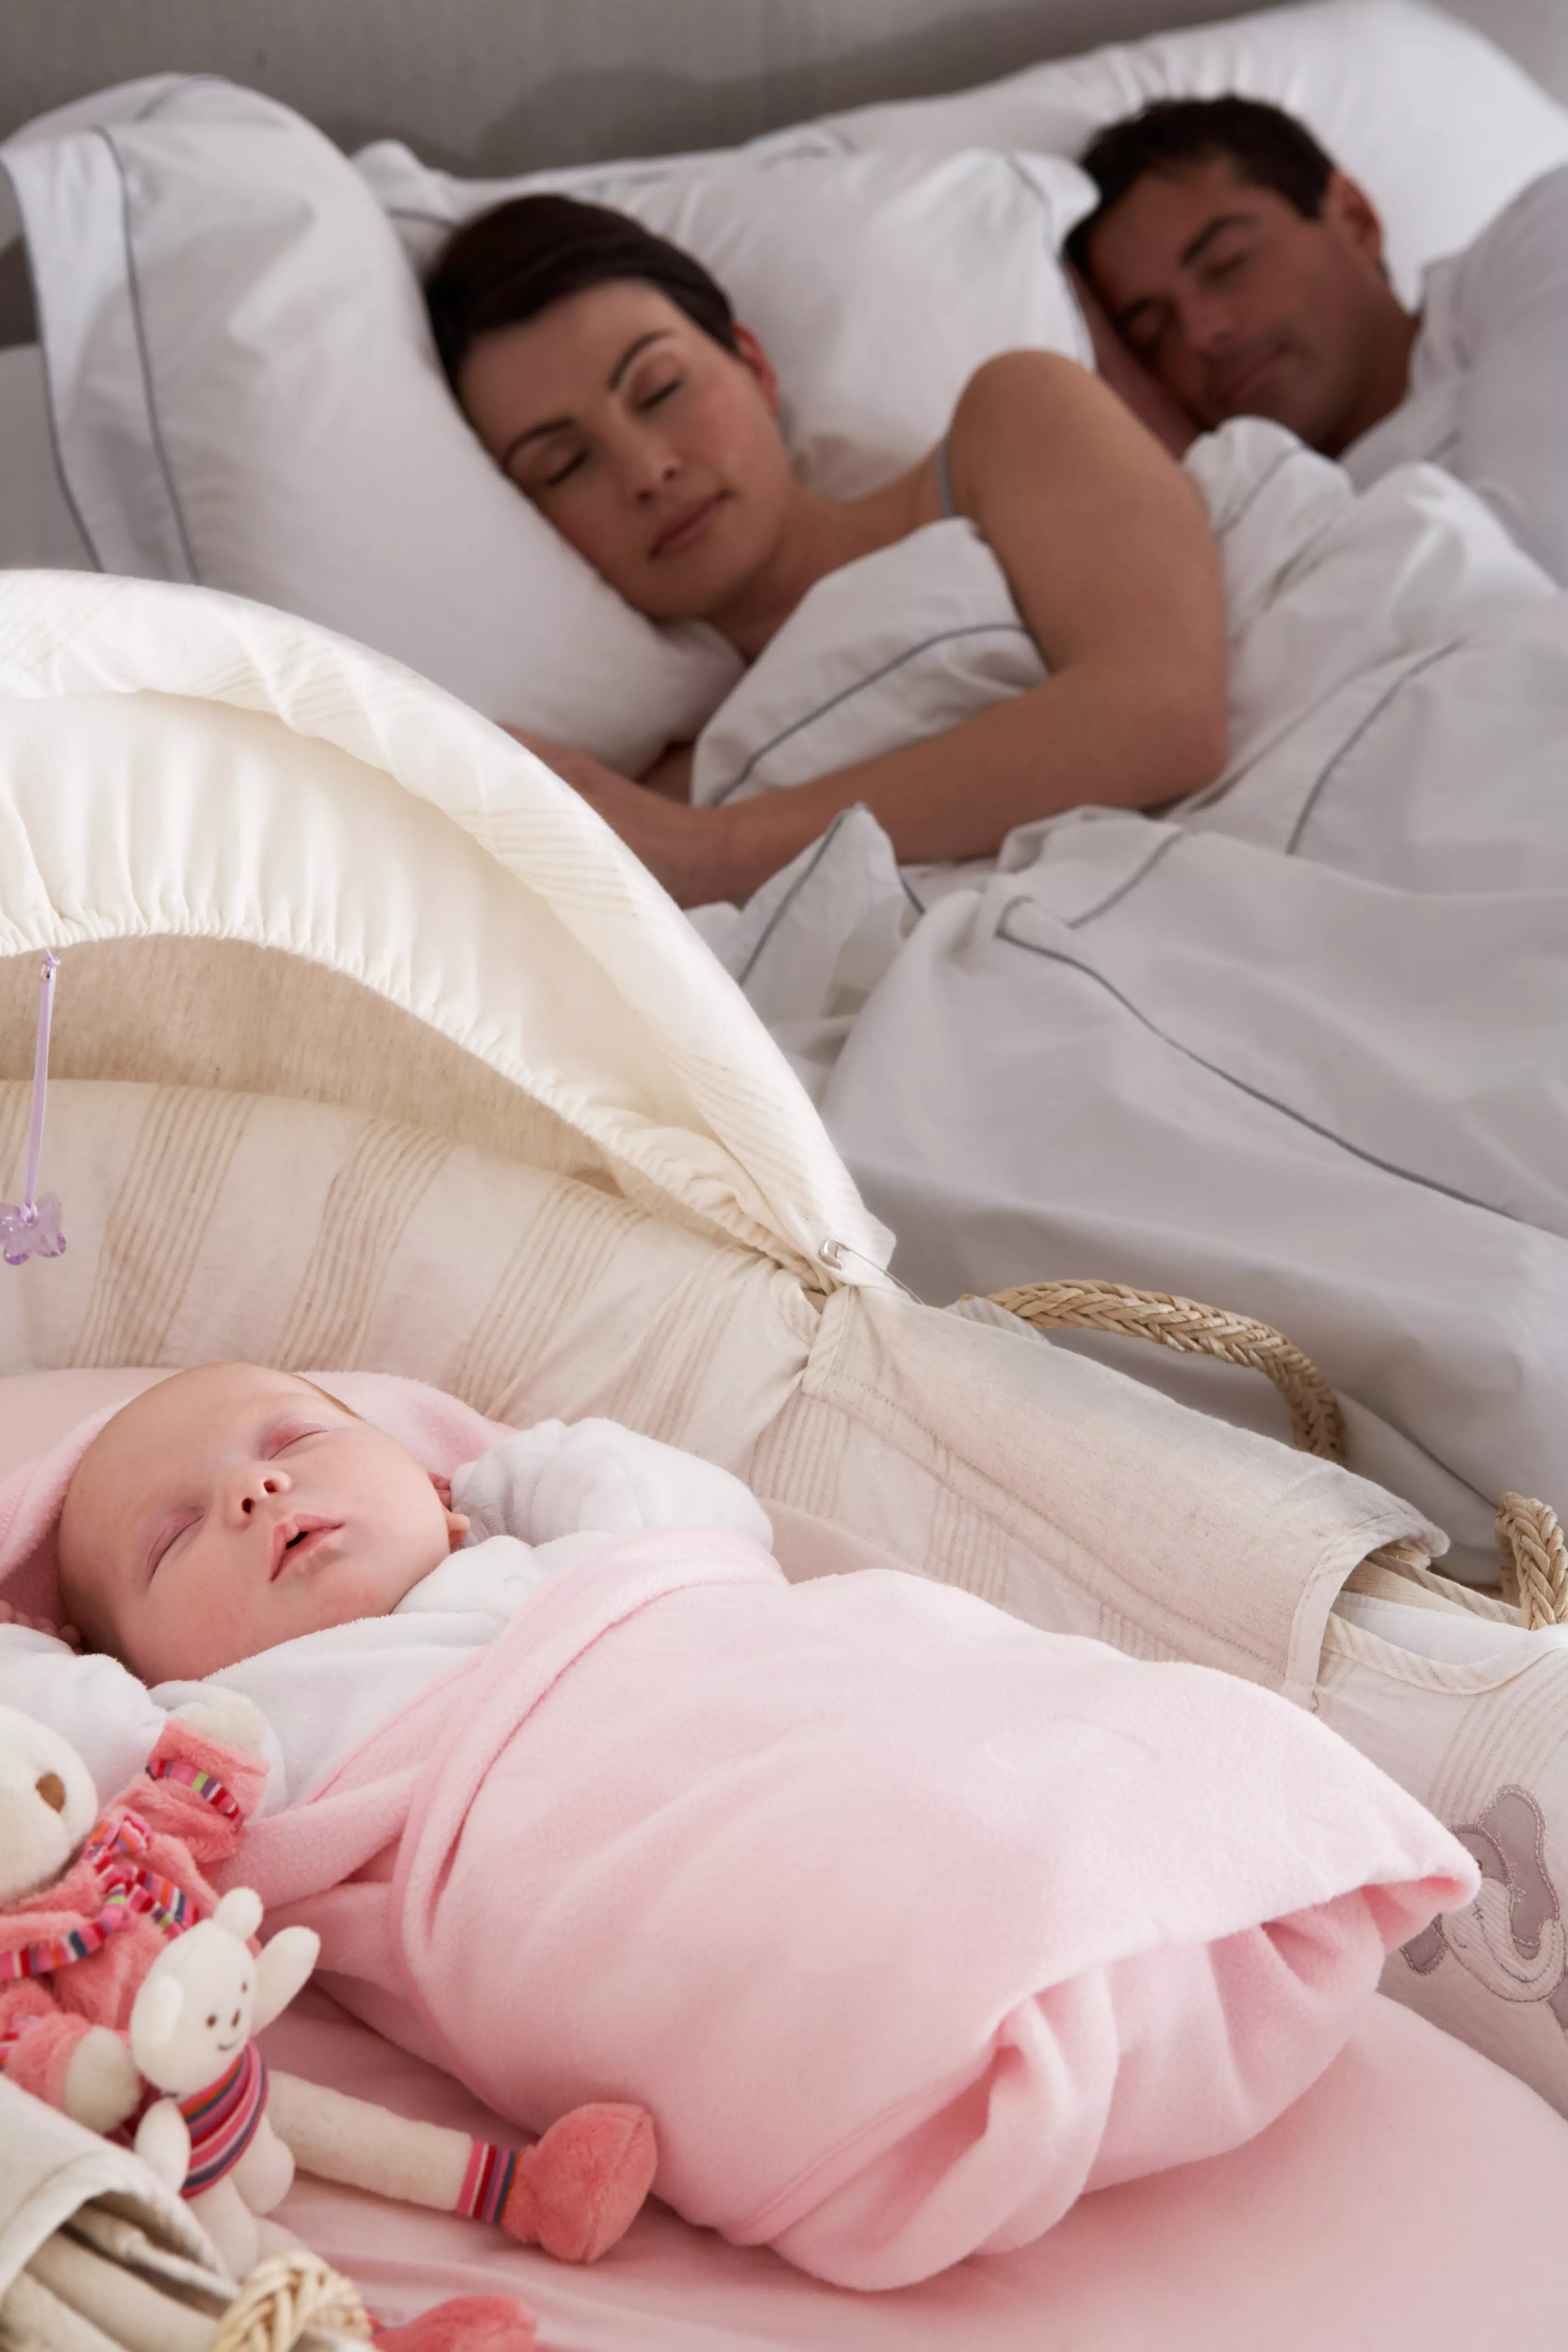 בחודשים הראשונים לחייו של התינוק הוא ישן לרוב בחדר ההורים. השאלה מה קורה אחרי זה